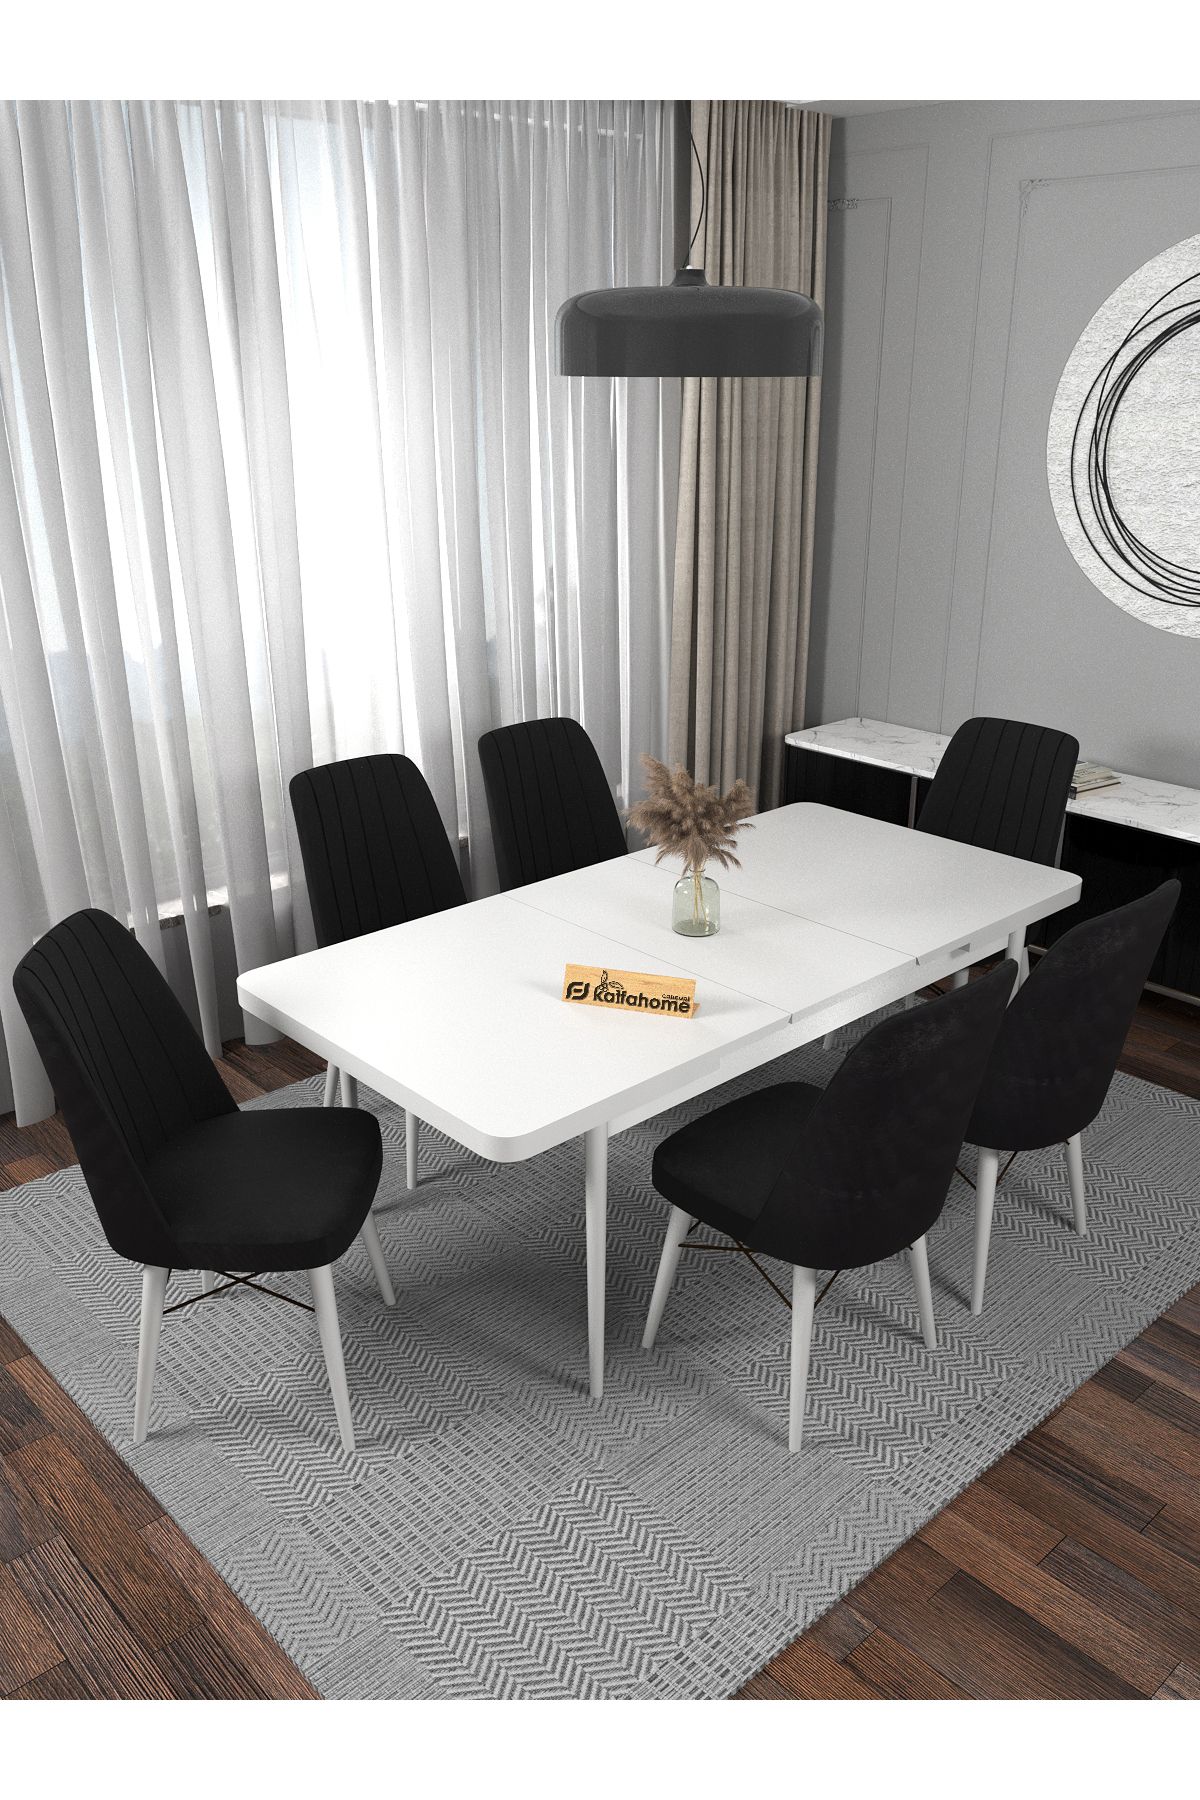 Kaffahome Riff Serisi Aytaşı 80x130 Açılır Yemek Masası , Yemek Masa Takımı 6 Siyah Sandalye